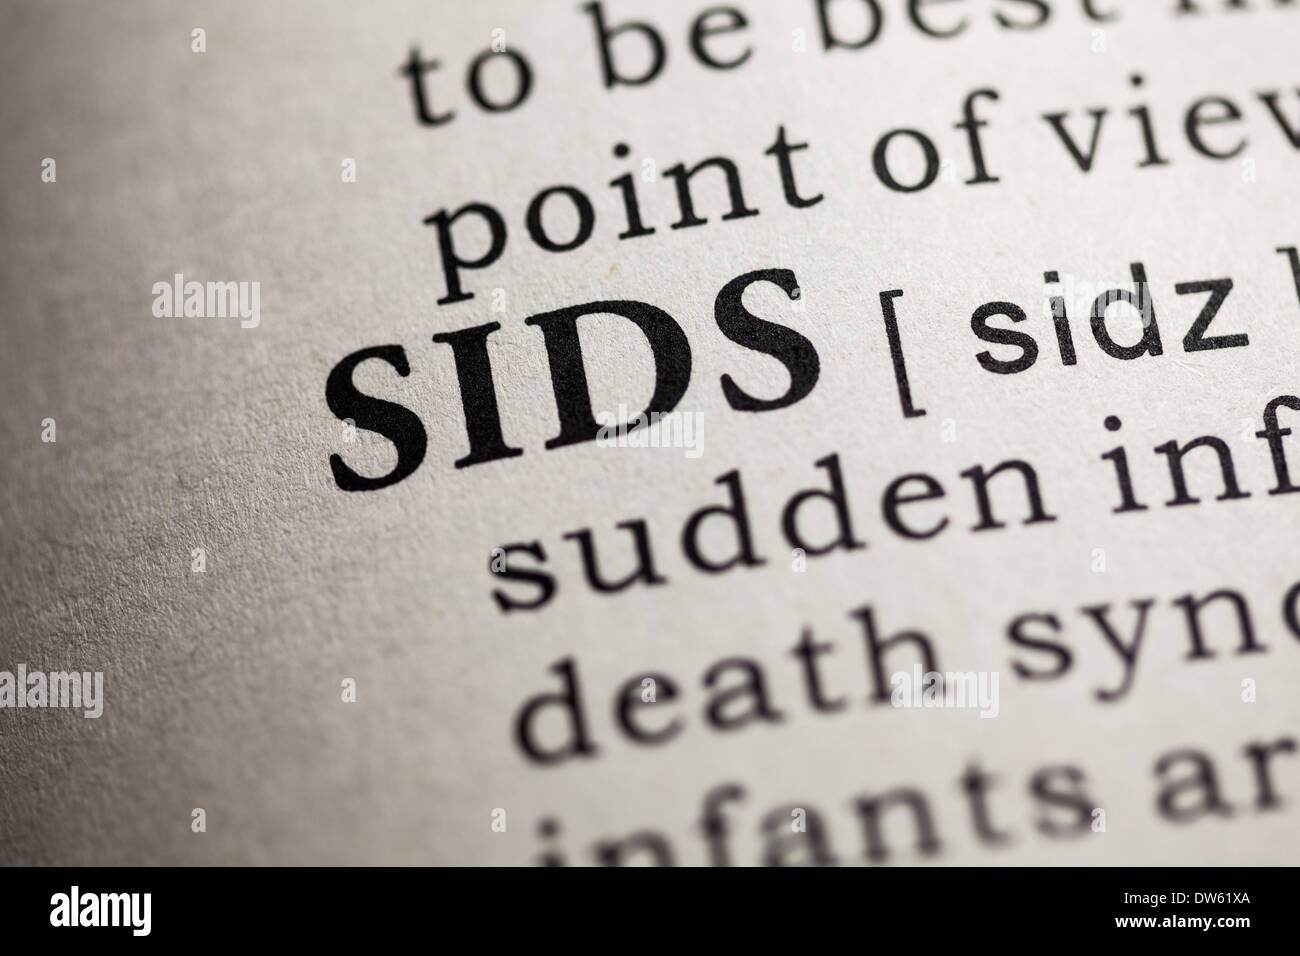 Fake Dizionario, definizione del dizionario della parola SID. La sindrome di morte infantile improvvisa Foto Stock